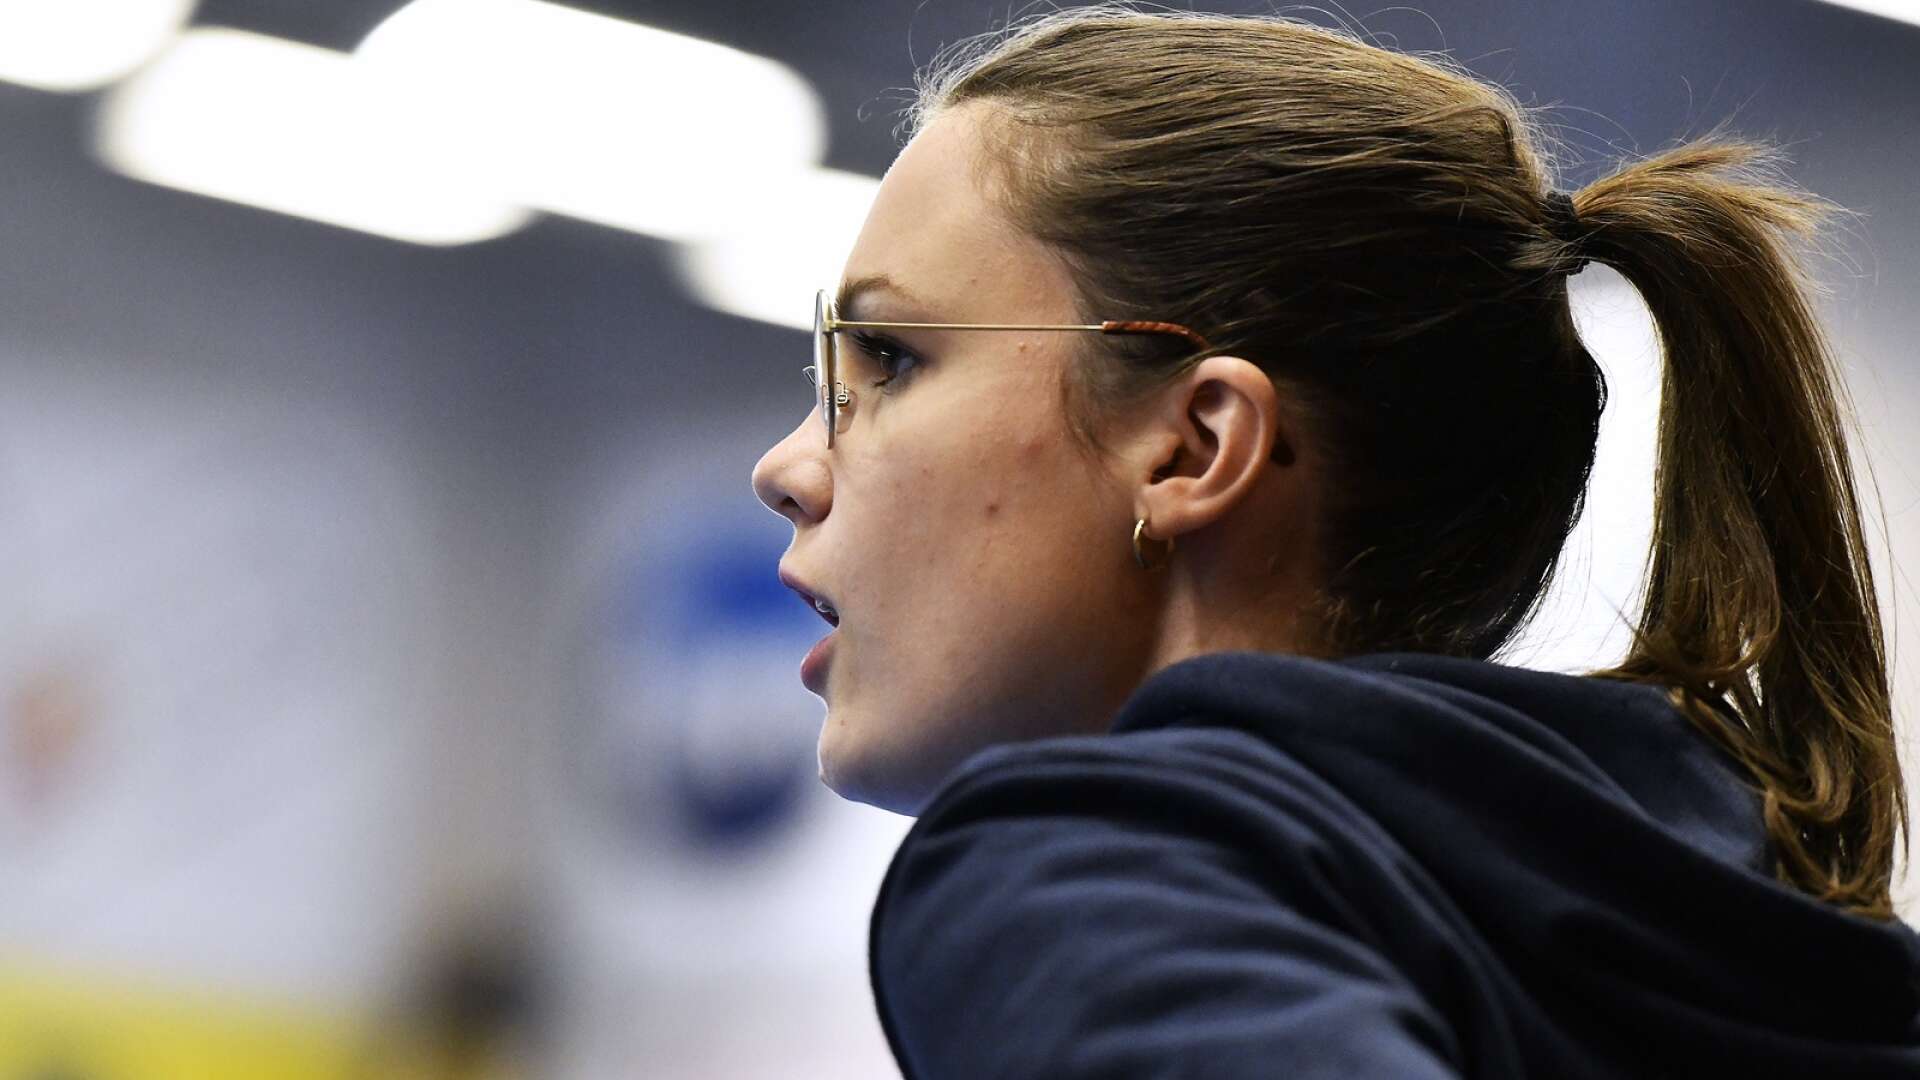 Arvikatjejen Linnea Juhlin dubblerar som både sportchef och assisterande tränare i SSL-laget Karlstad.